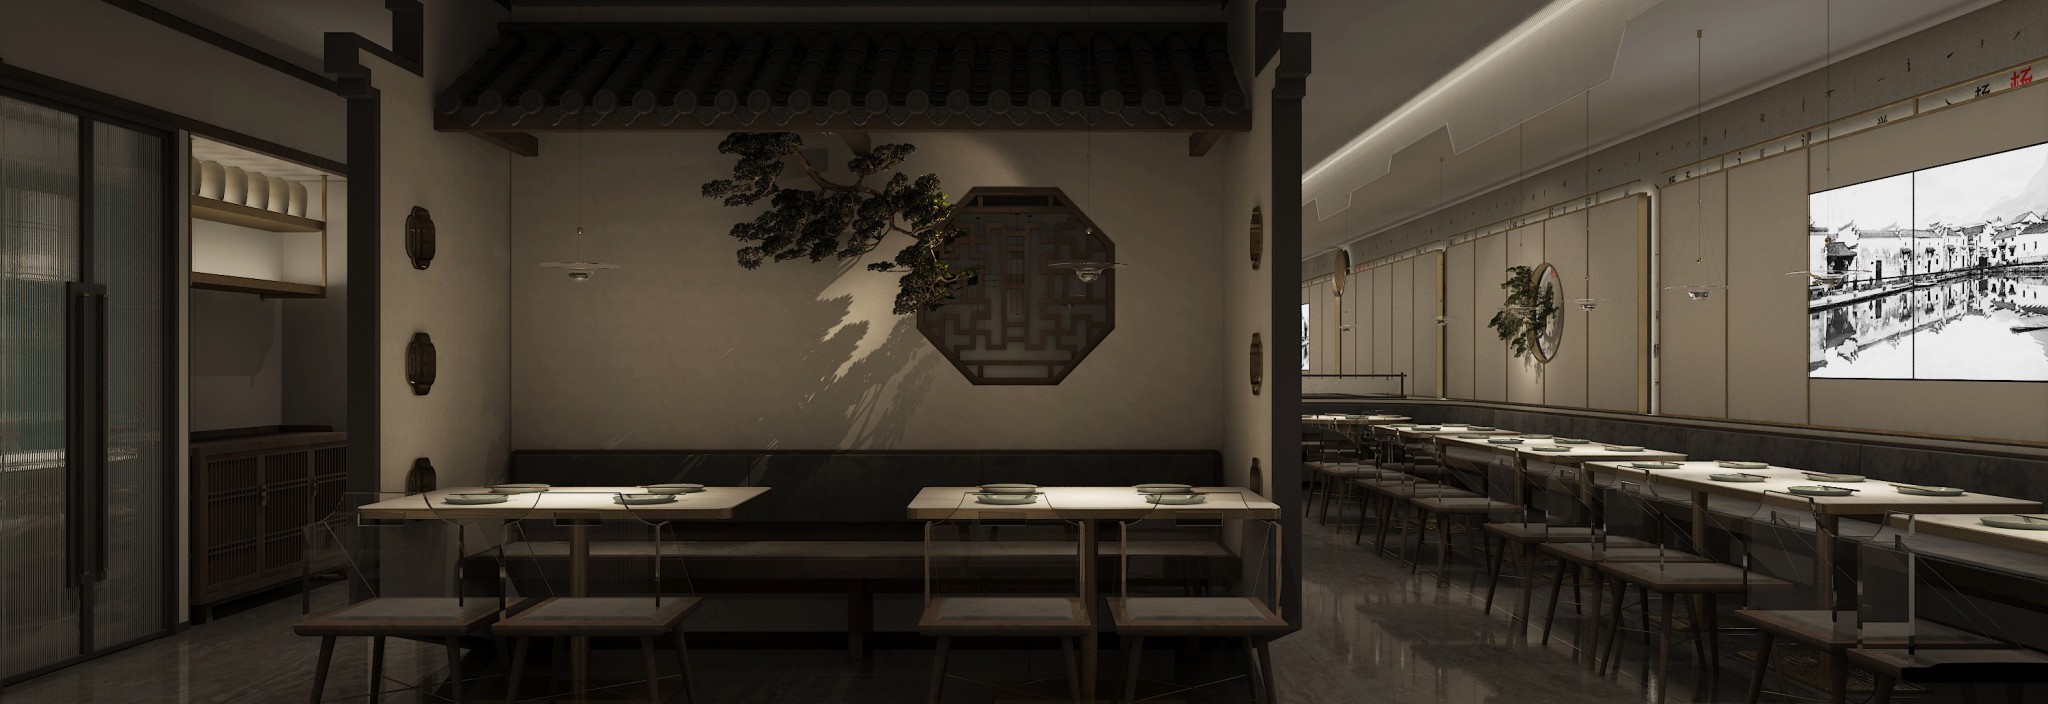 楊記興連鎖餐廳設計-餐廳設計-杭州達岸品牌策劃設計公司